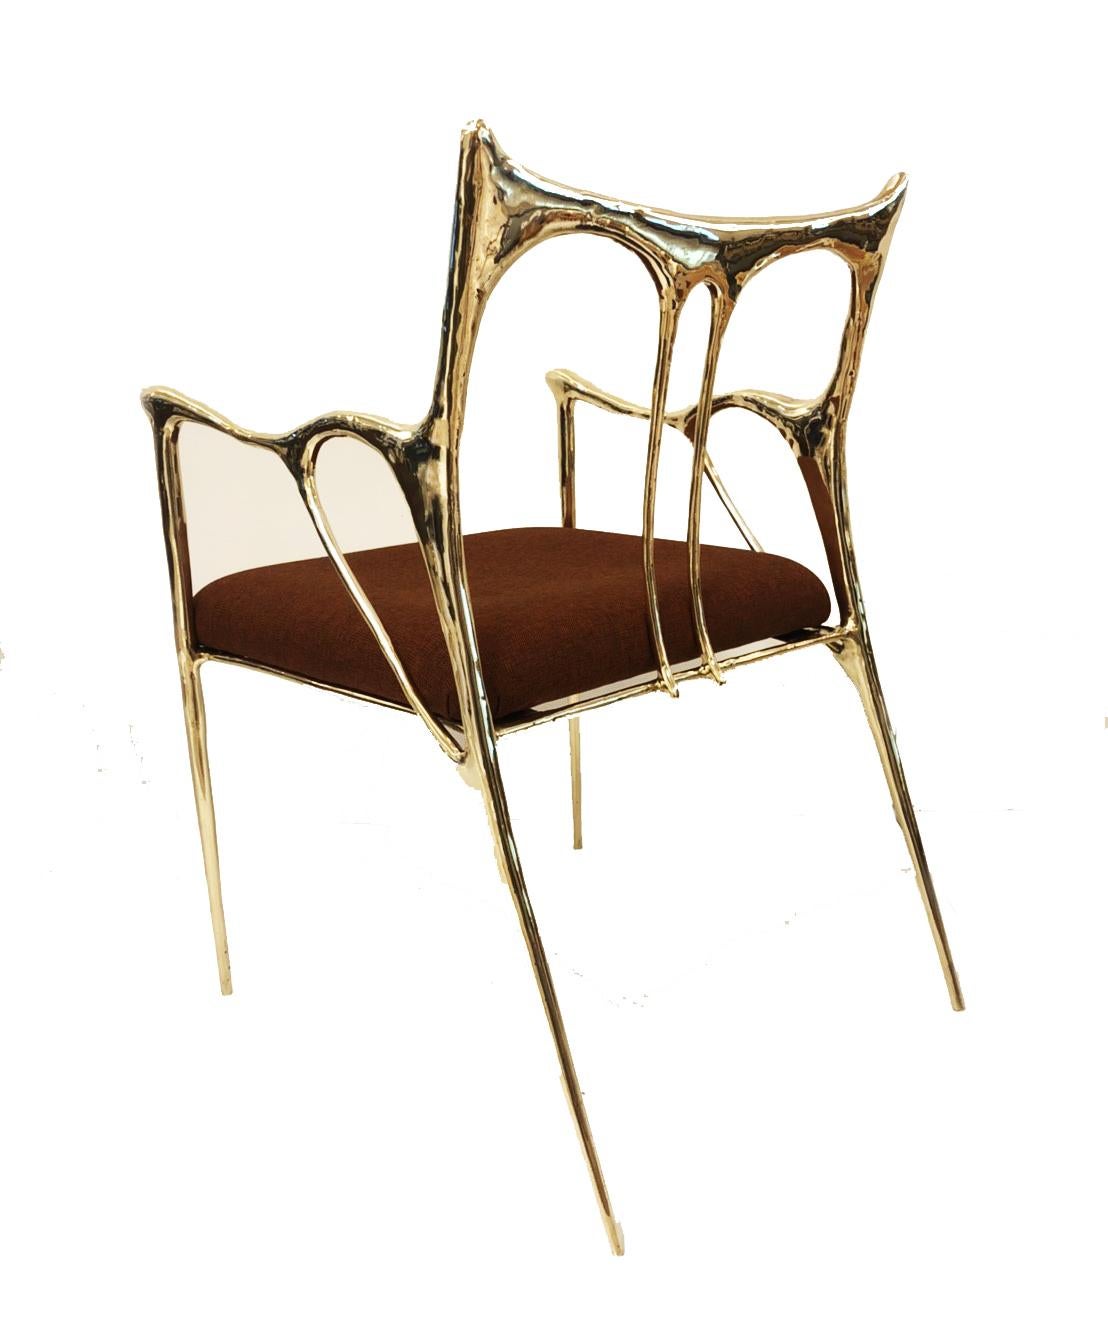 Stuhl aus Messing mit Skulpturen, Misaya.
Abmessungen: B 54 x L 58 x H 79 cm (Sitzfläche: 63).
Handgeformter Stuhl aus Messing.
 